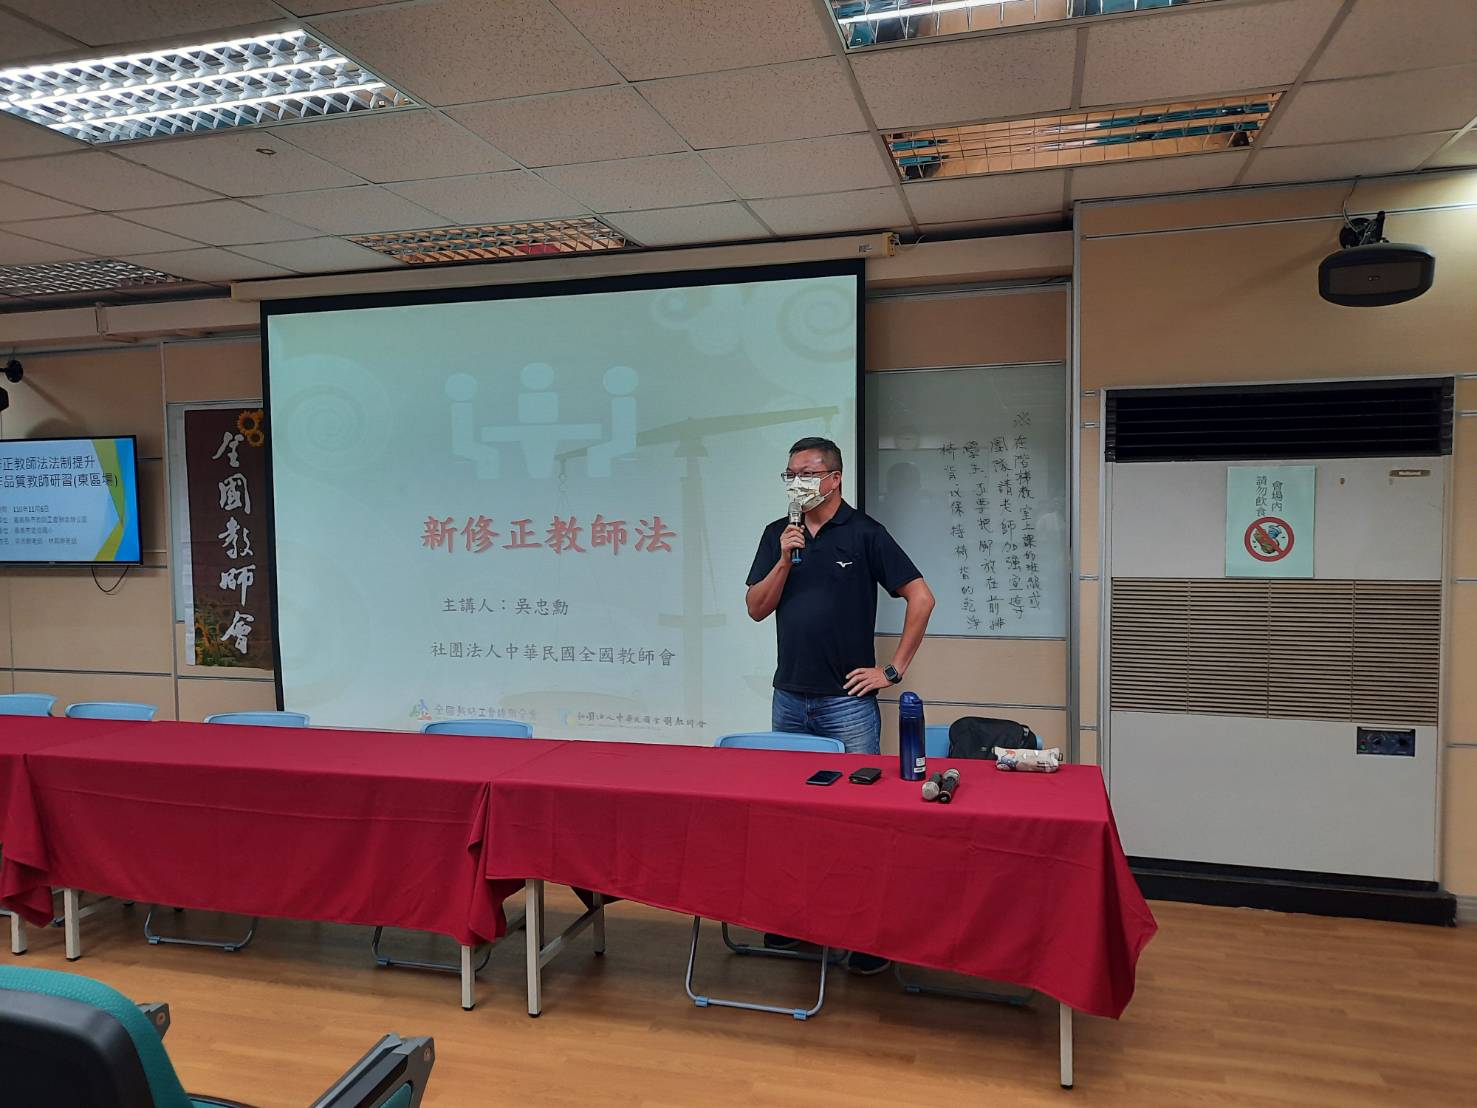 本场研习特别邀请屏东县教育产业工会秘书长吴忠勋担纲宣讲。